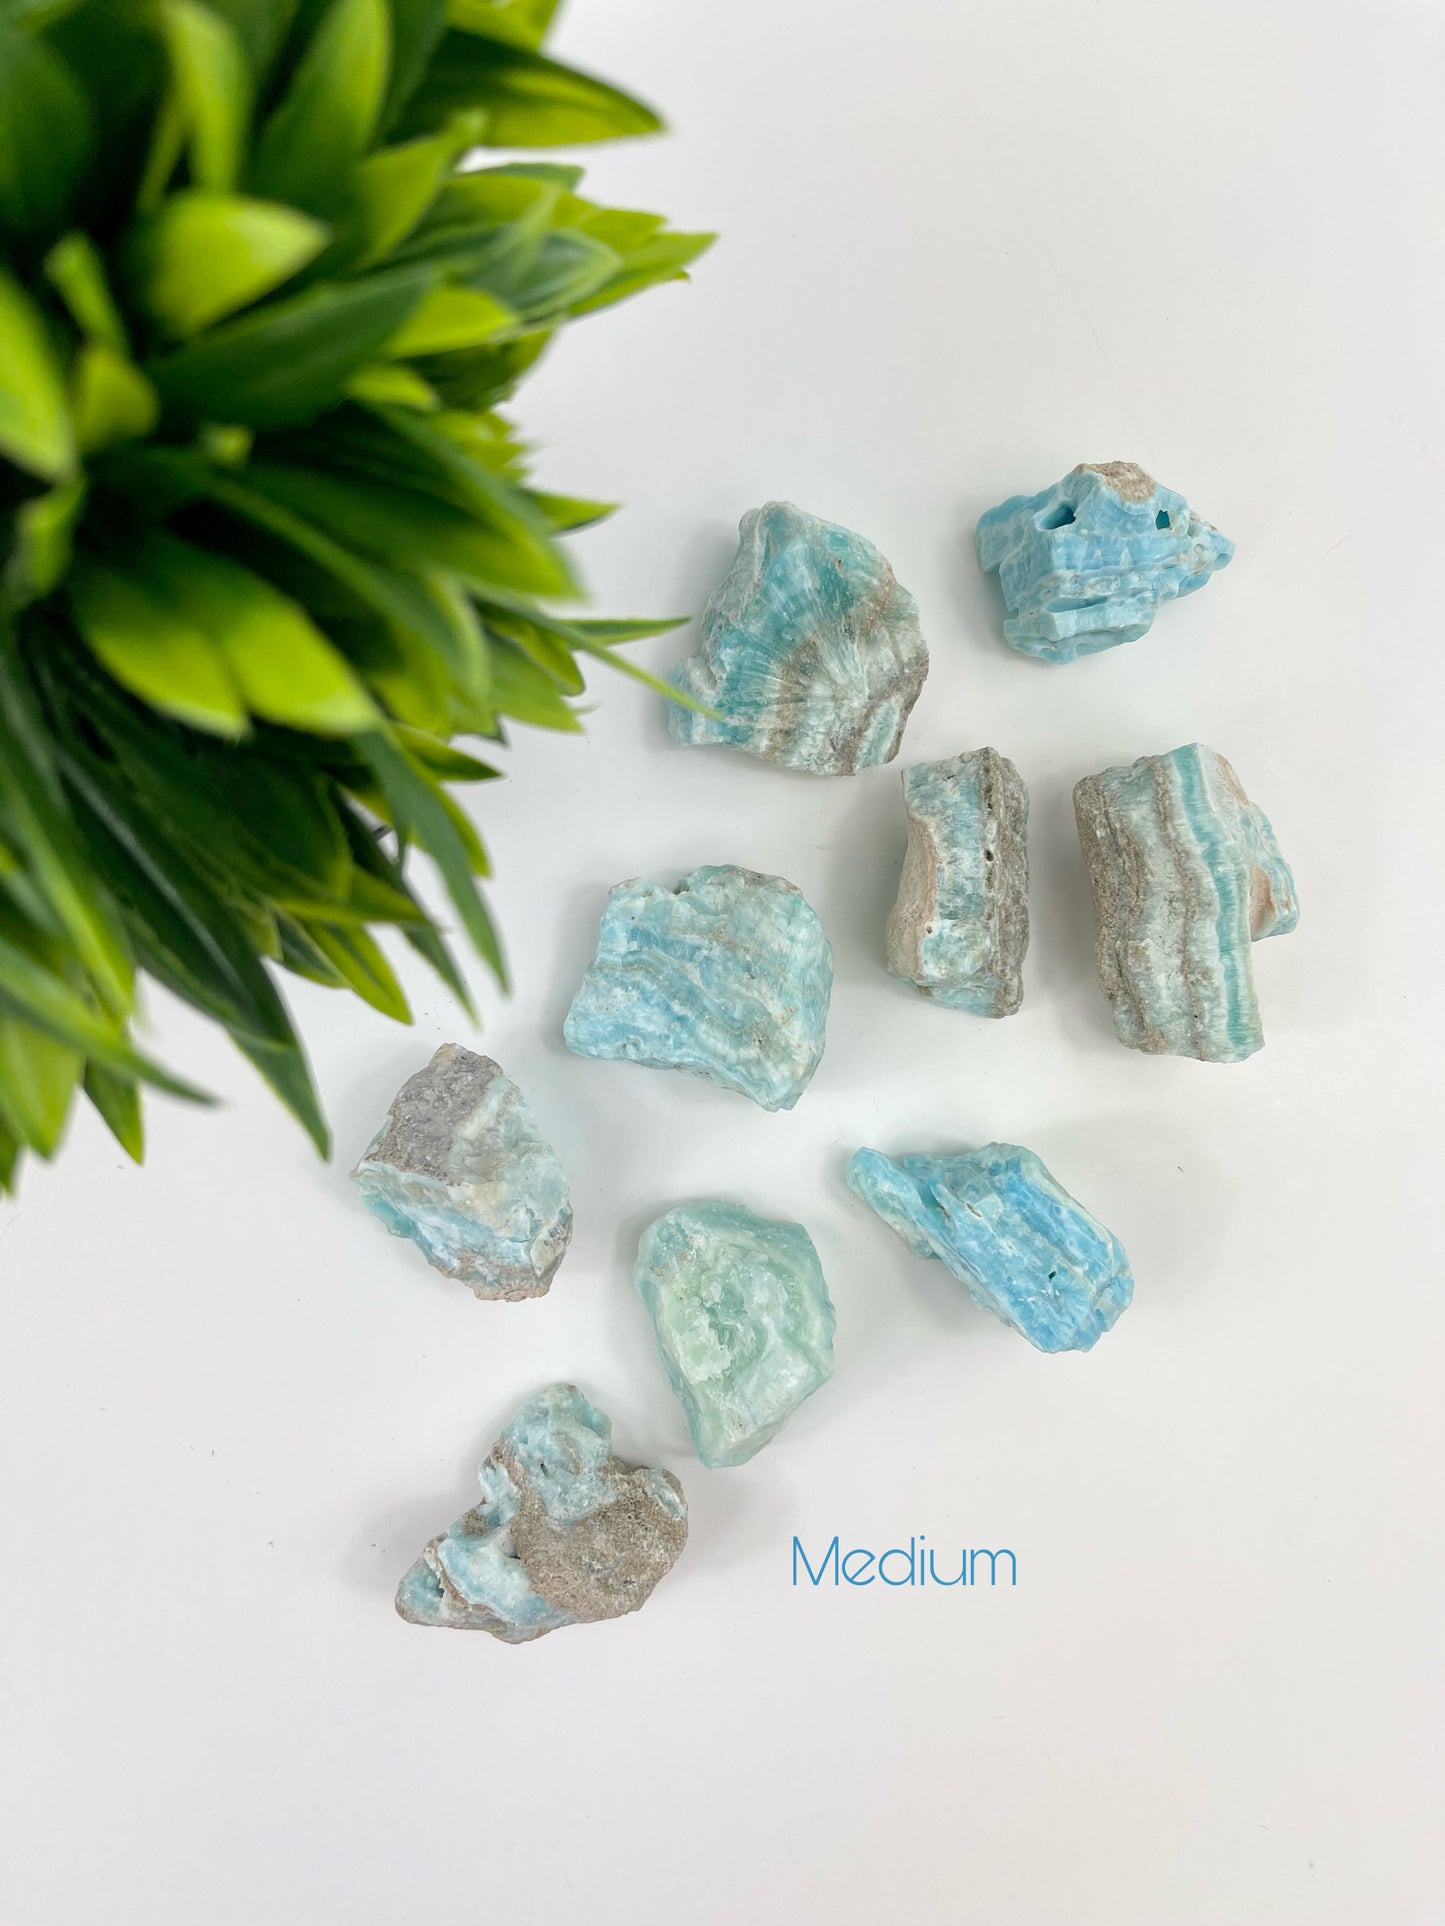 Medium Caribbean Blue Calcite Raw Pieces